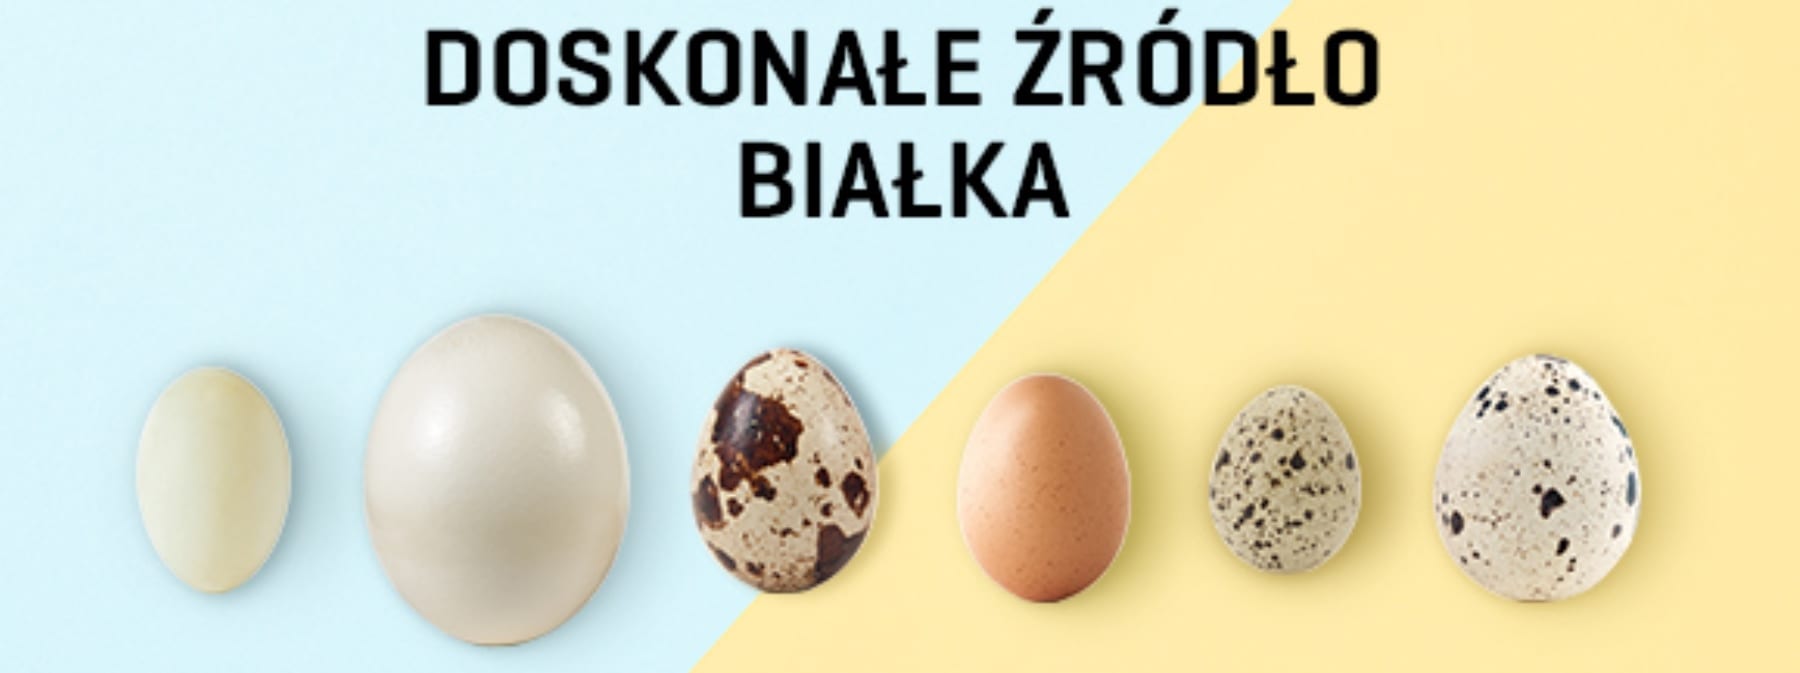 Jaja – doskonałe źródło białka | Jedz jaka na zdrowie | Źródło witamin